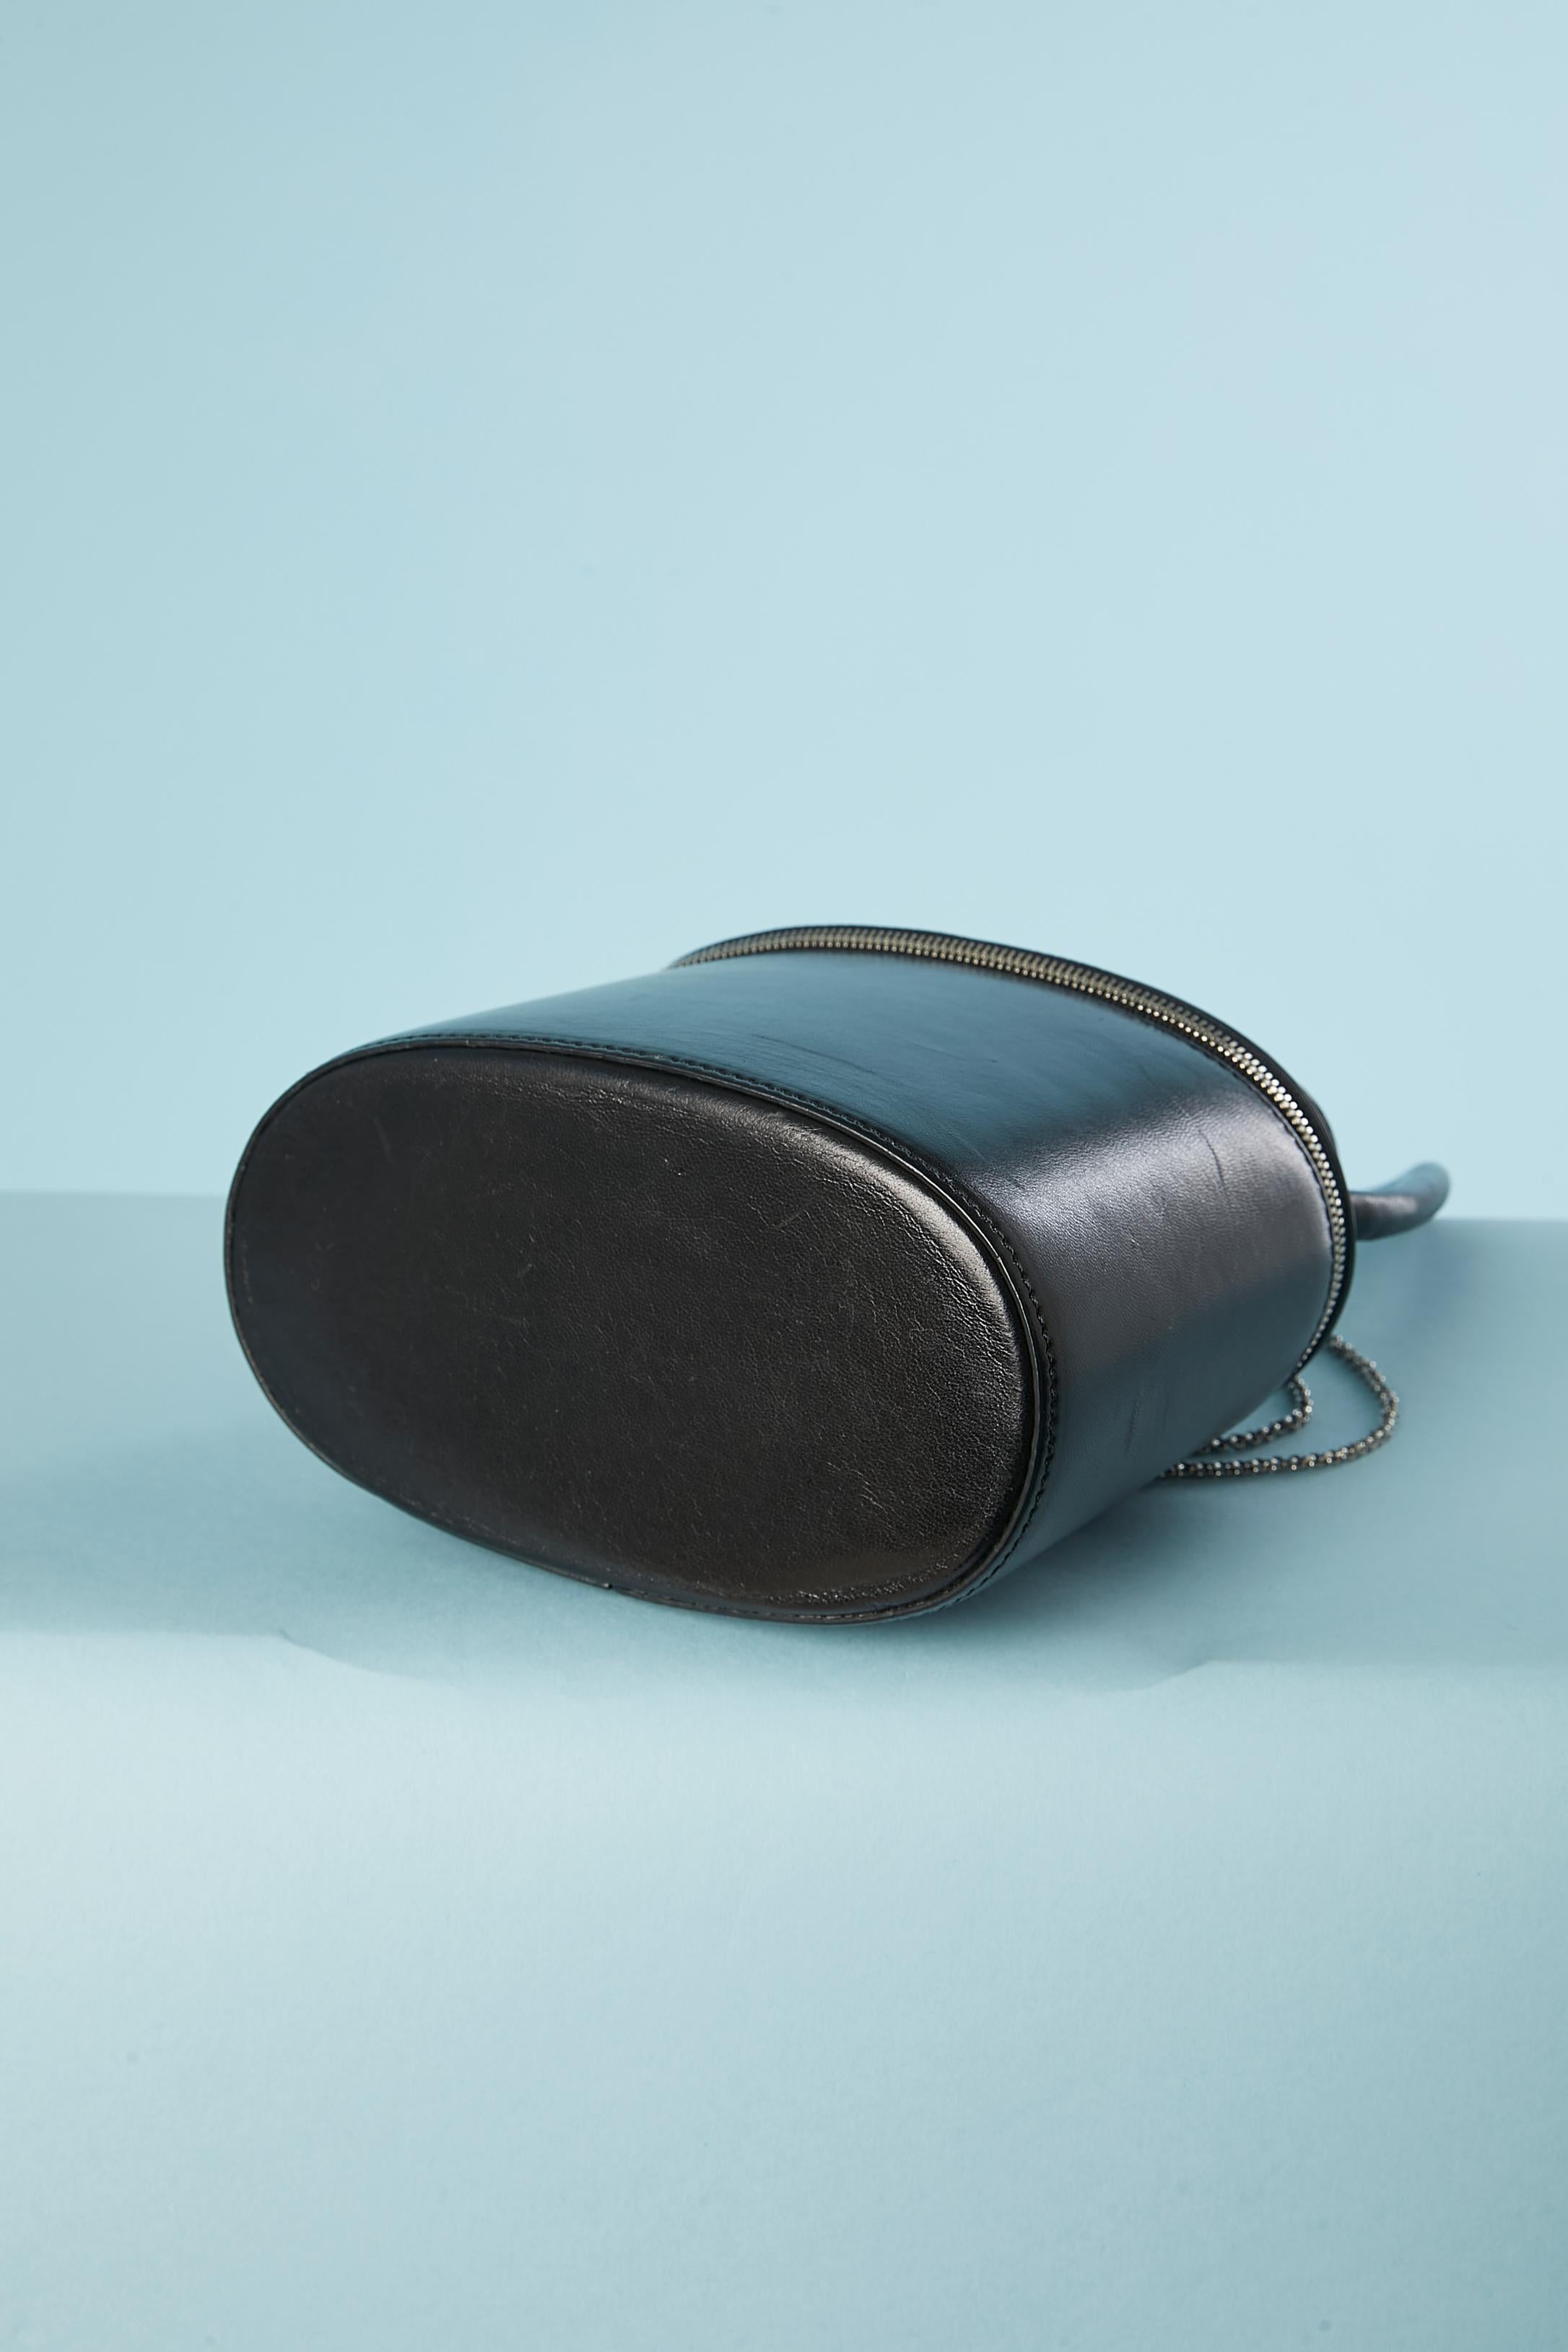 Women's or Men's Black leather handbag 